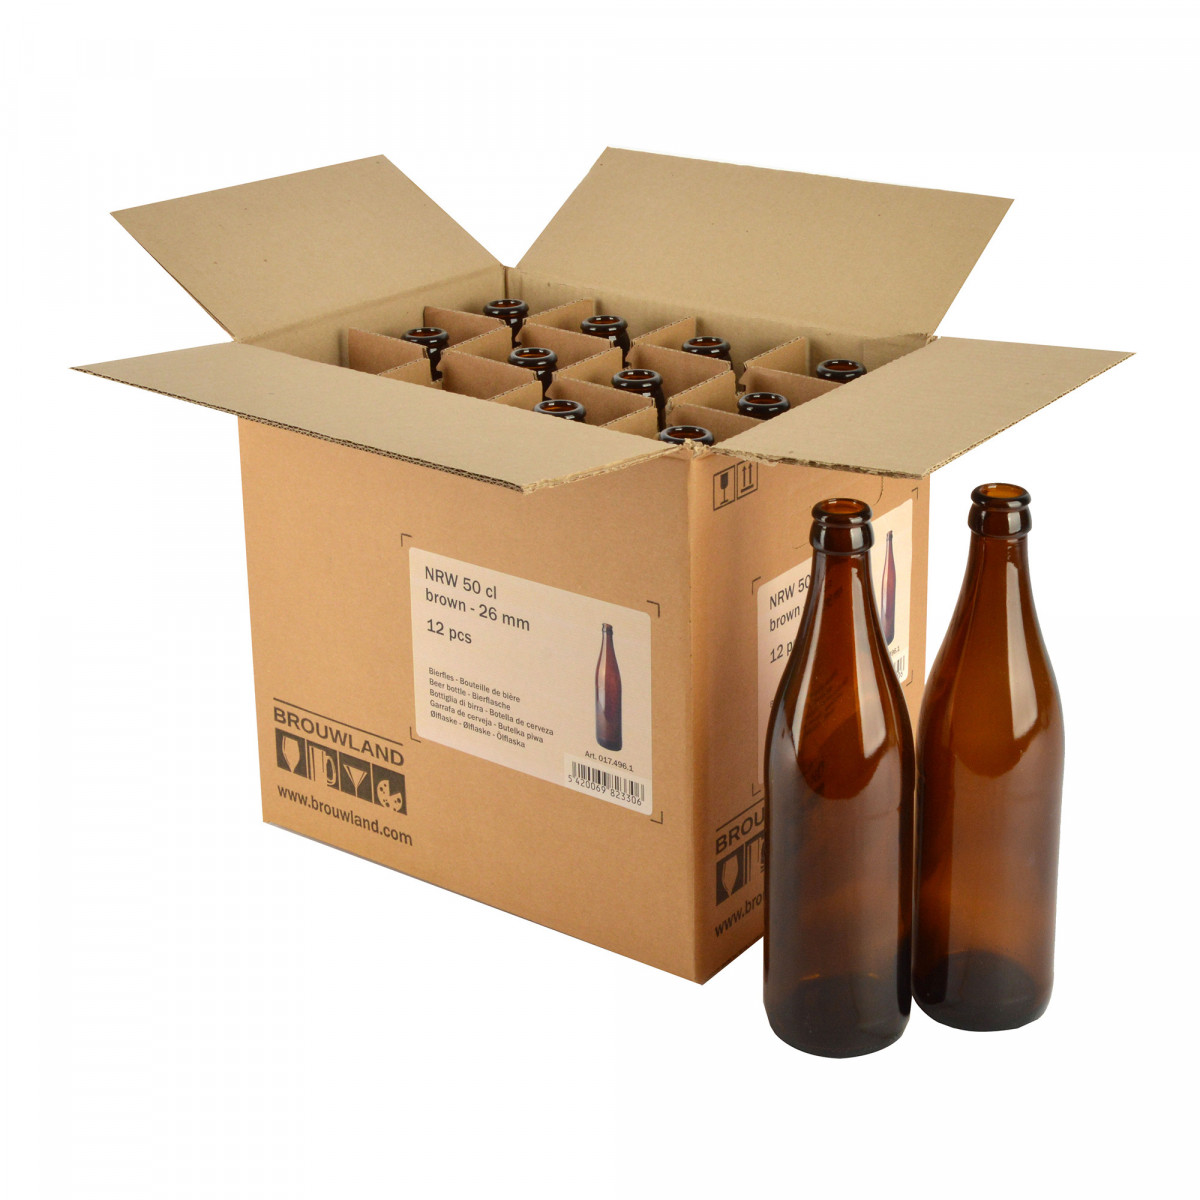 Bouteille de bière NRW 50 cl, brune, 26 mm, boîte 12 pcs